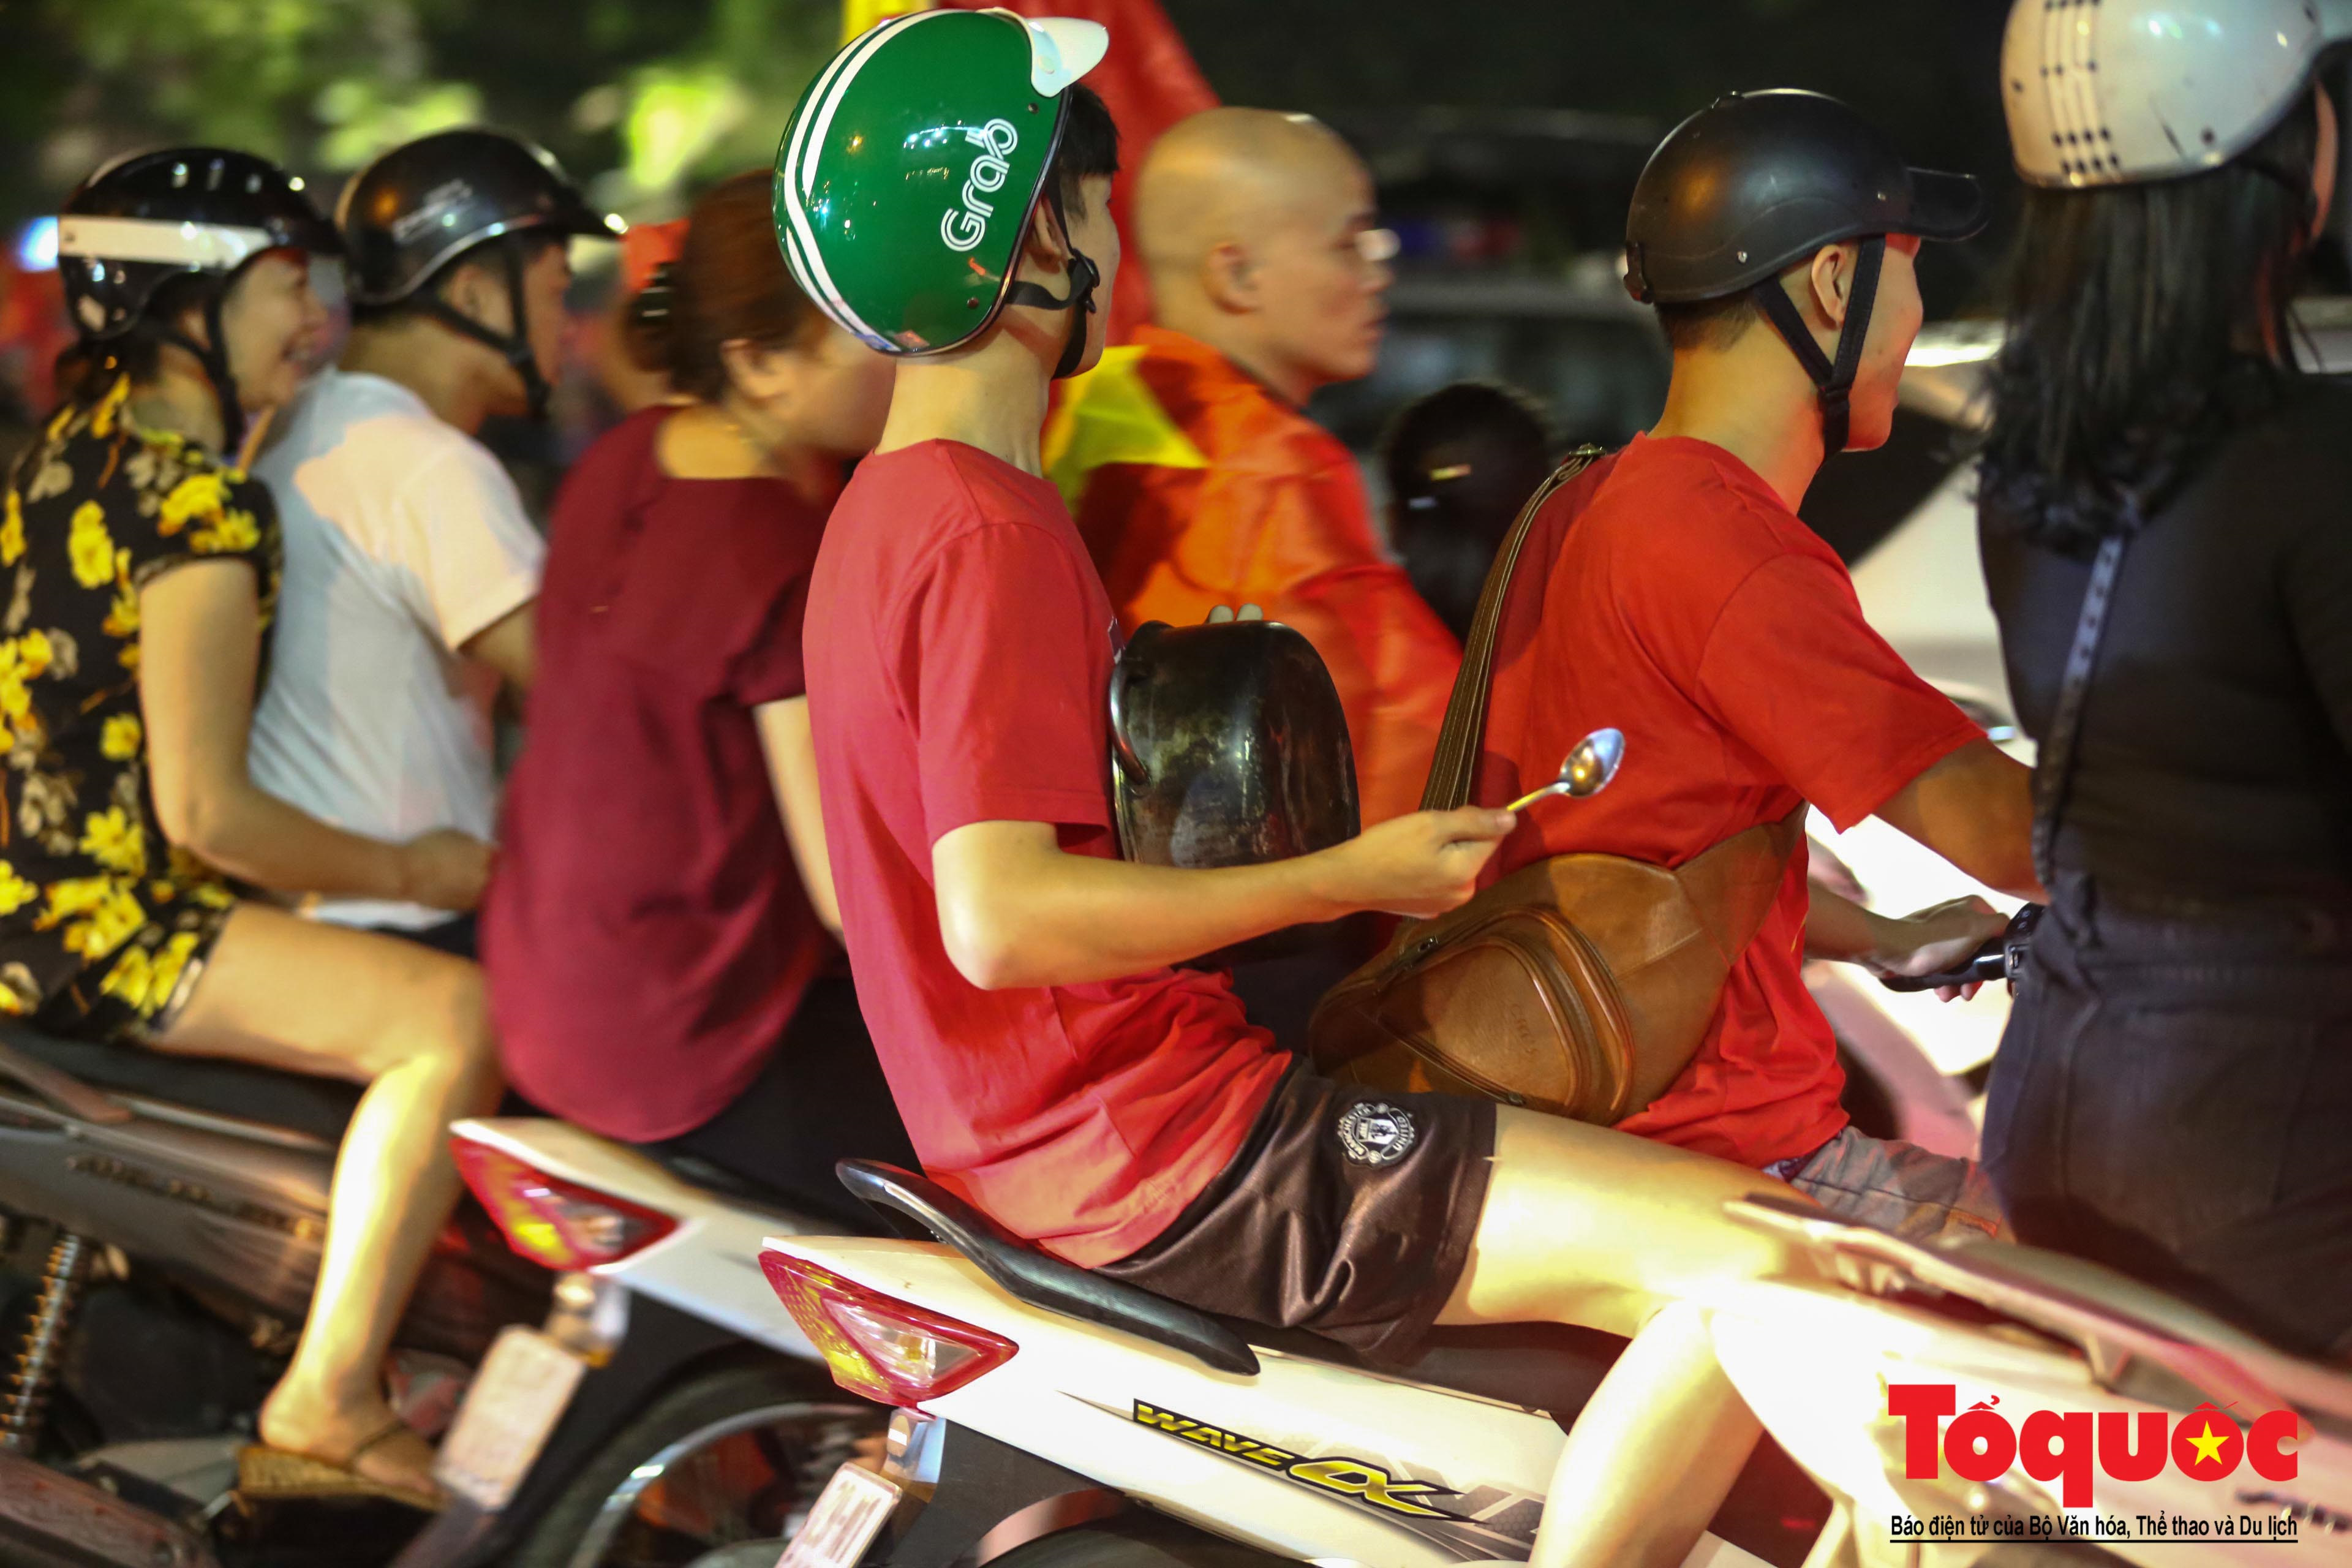 Olympic Việt Nam là sự kiện đáng chú ý nhất trong làng thể thao Việt Nam. Hãy xem những hình ảnh liên quan để hiểu rõ hơn về những cầu thủ, những chiến thắng đầy tiếng vang và những cảm xúc rực rỡ tại Olympic Việt Nam.